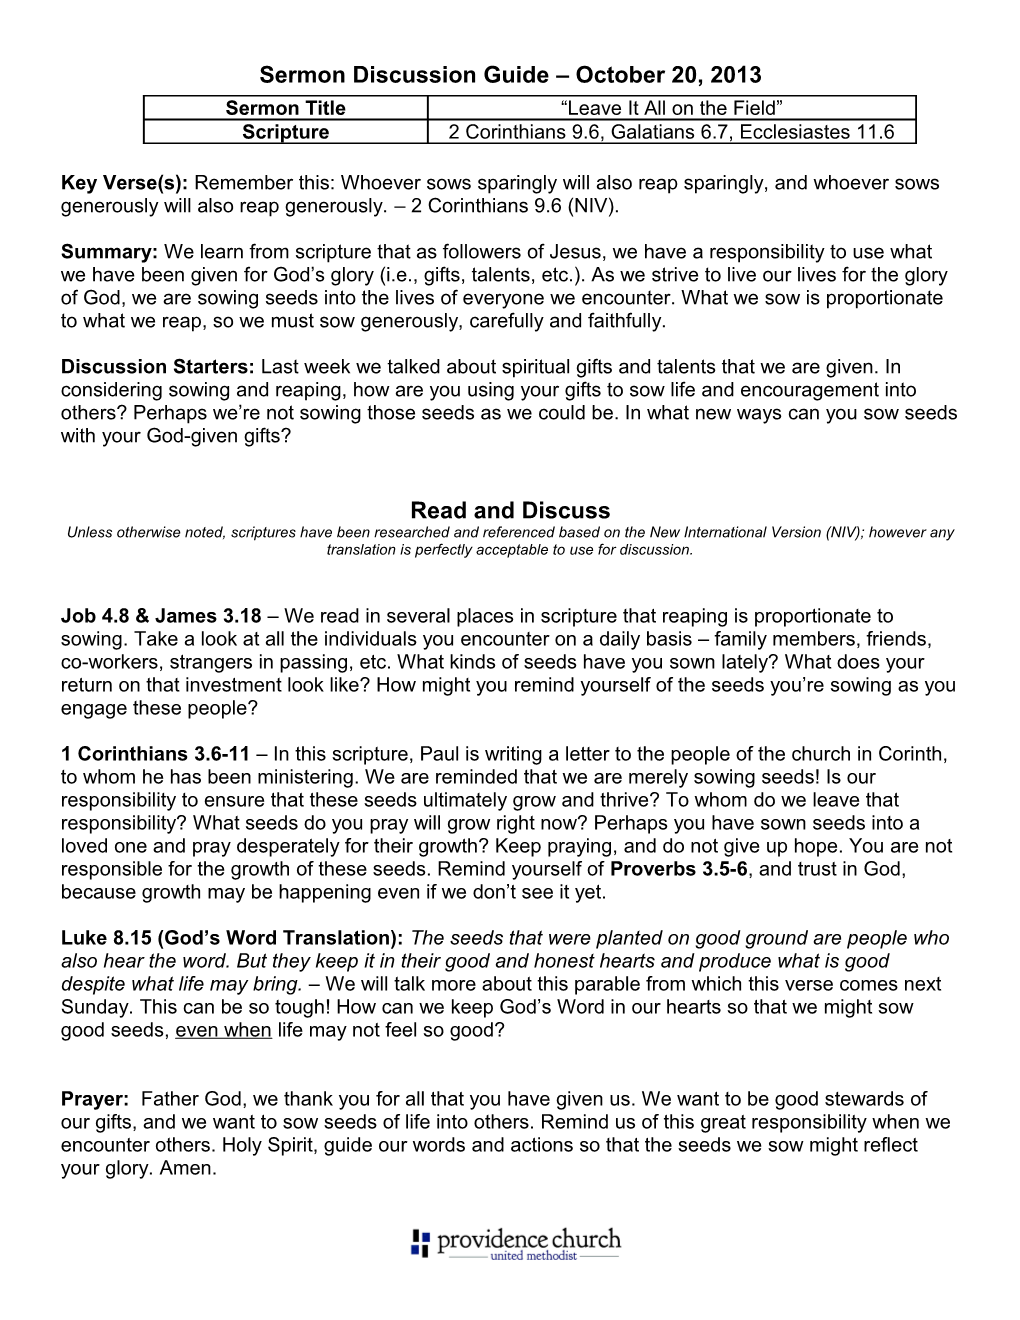 Sermon Discussion Guide October 20, 2013